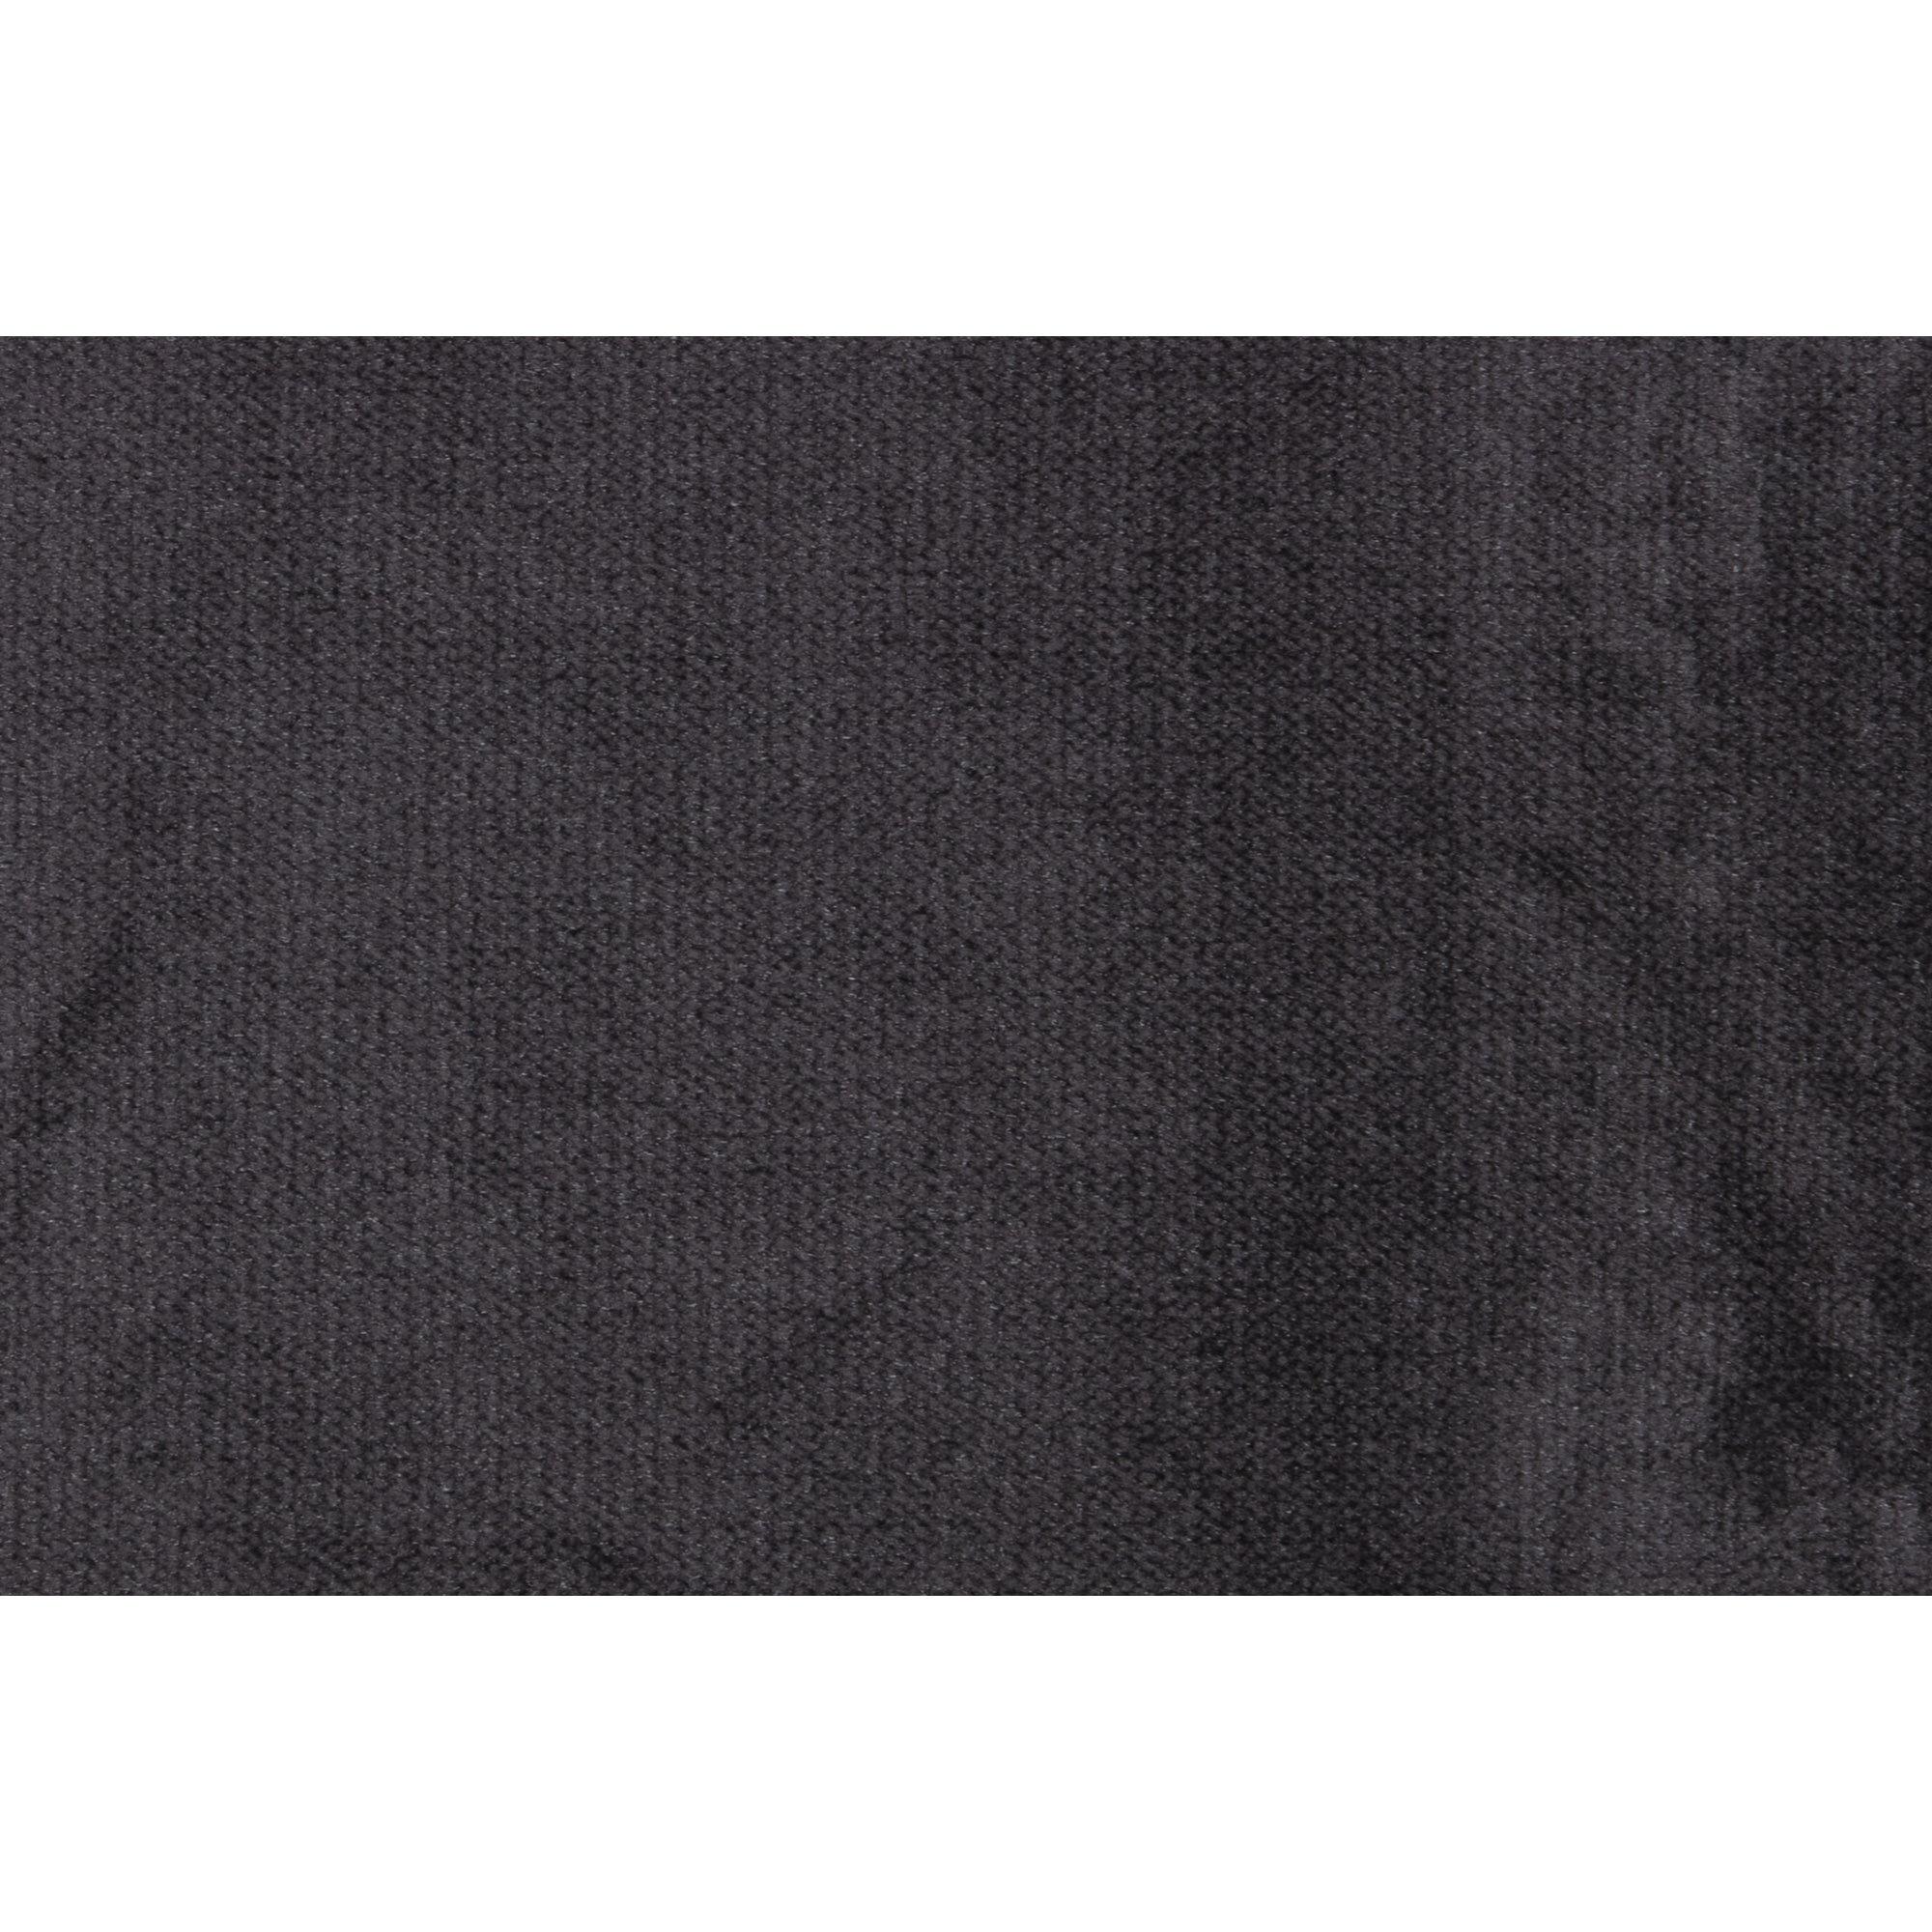  Rodeo Chaiselong Venstrevendt Velour - Dark Grey fra BePureHome i Velour (Varenr: 800905-67)